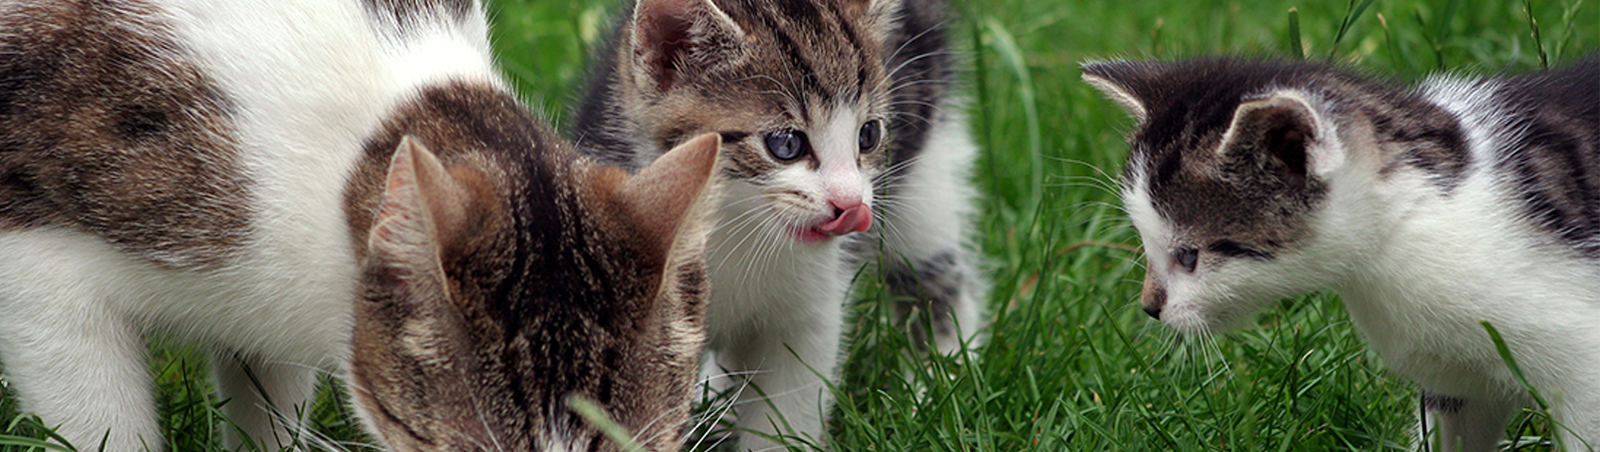 Eine Katze und zwei Kitten fressen auf einer Wiese von einem Teller.